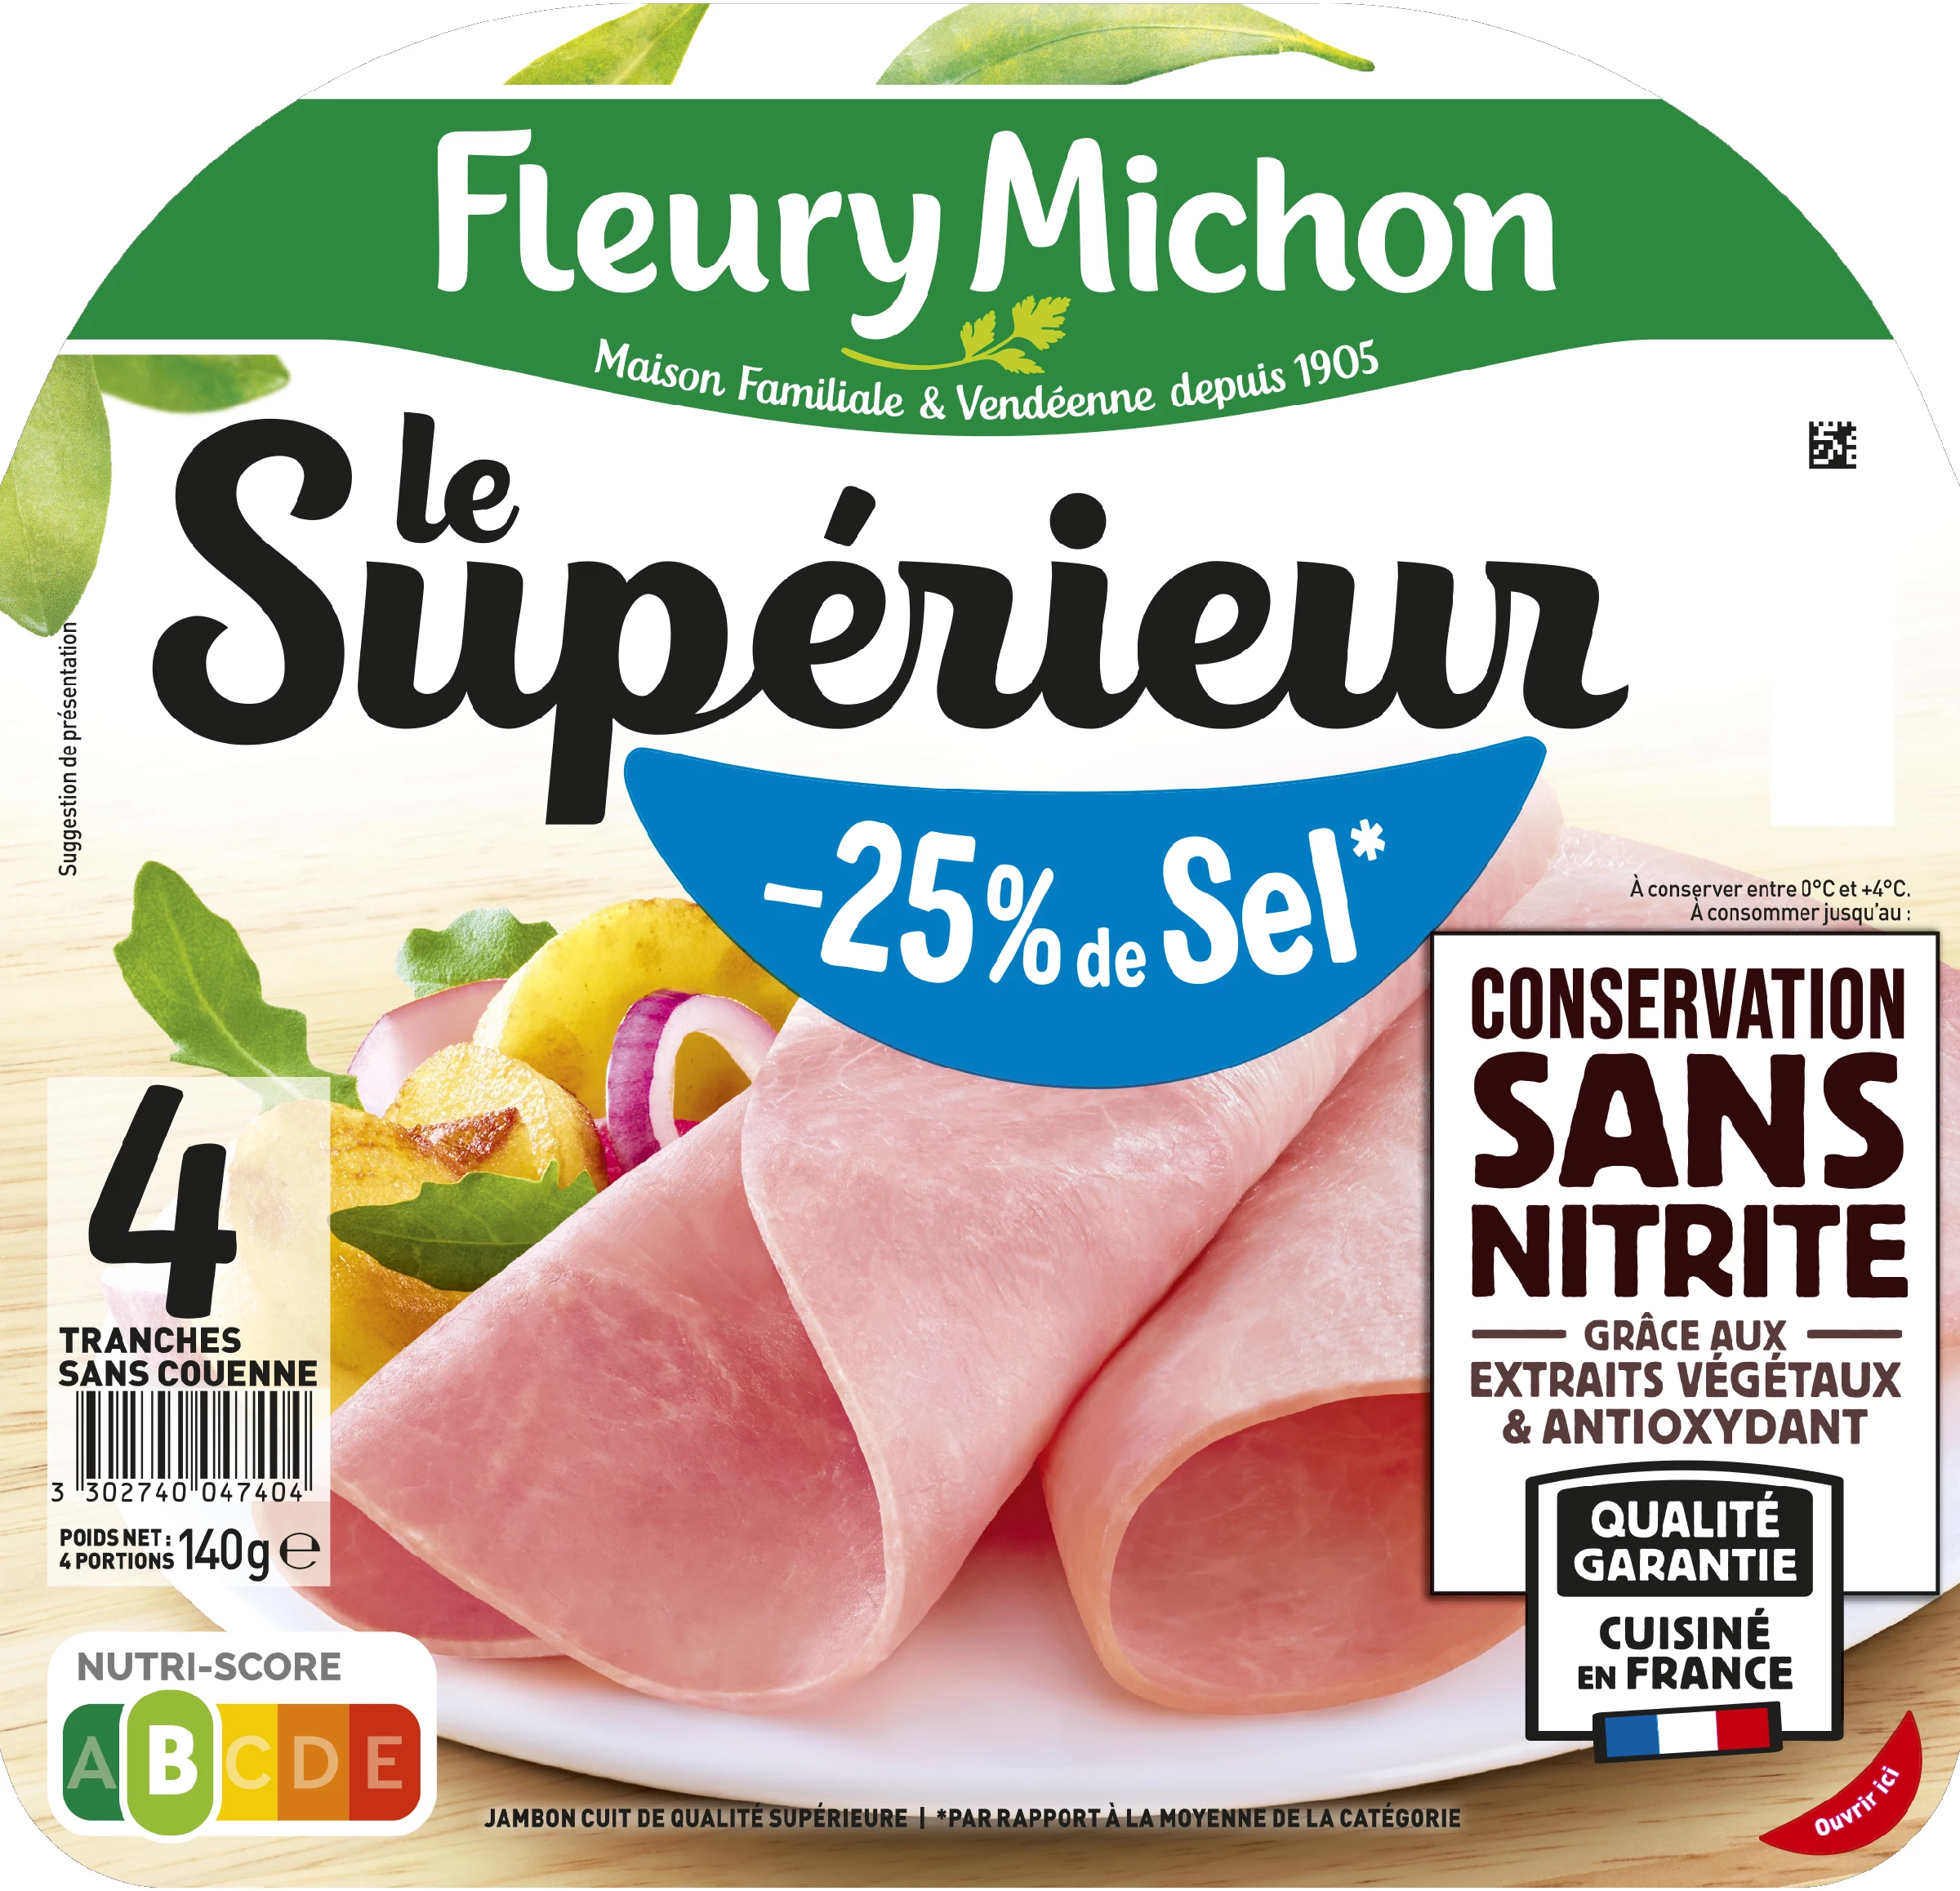 Jambon Le Supérieur Conservation sans Nitrite Réduit en Sel, 4 Tranches - FLEURY MICHON